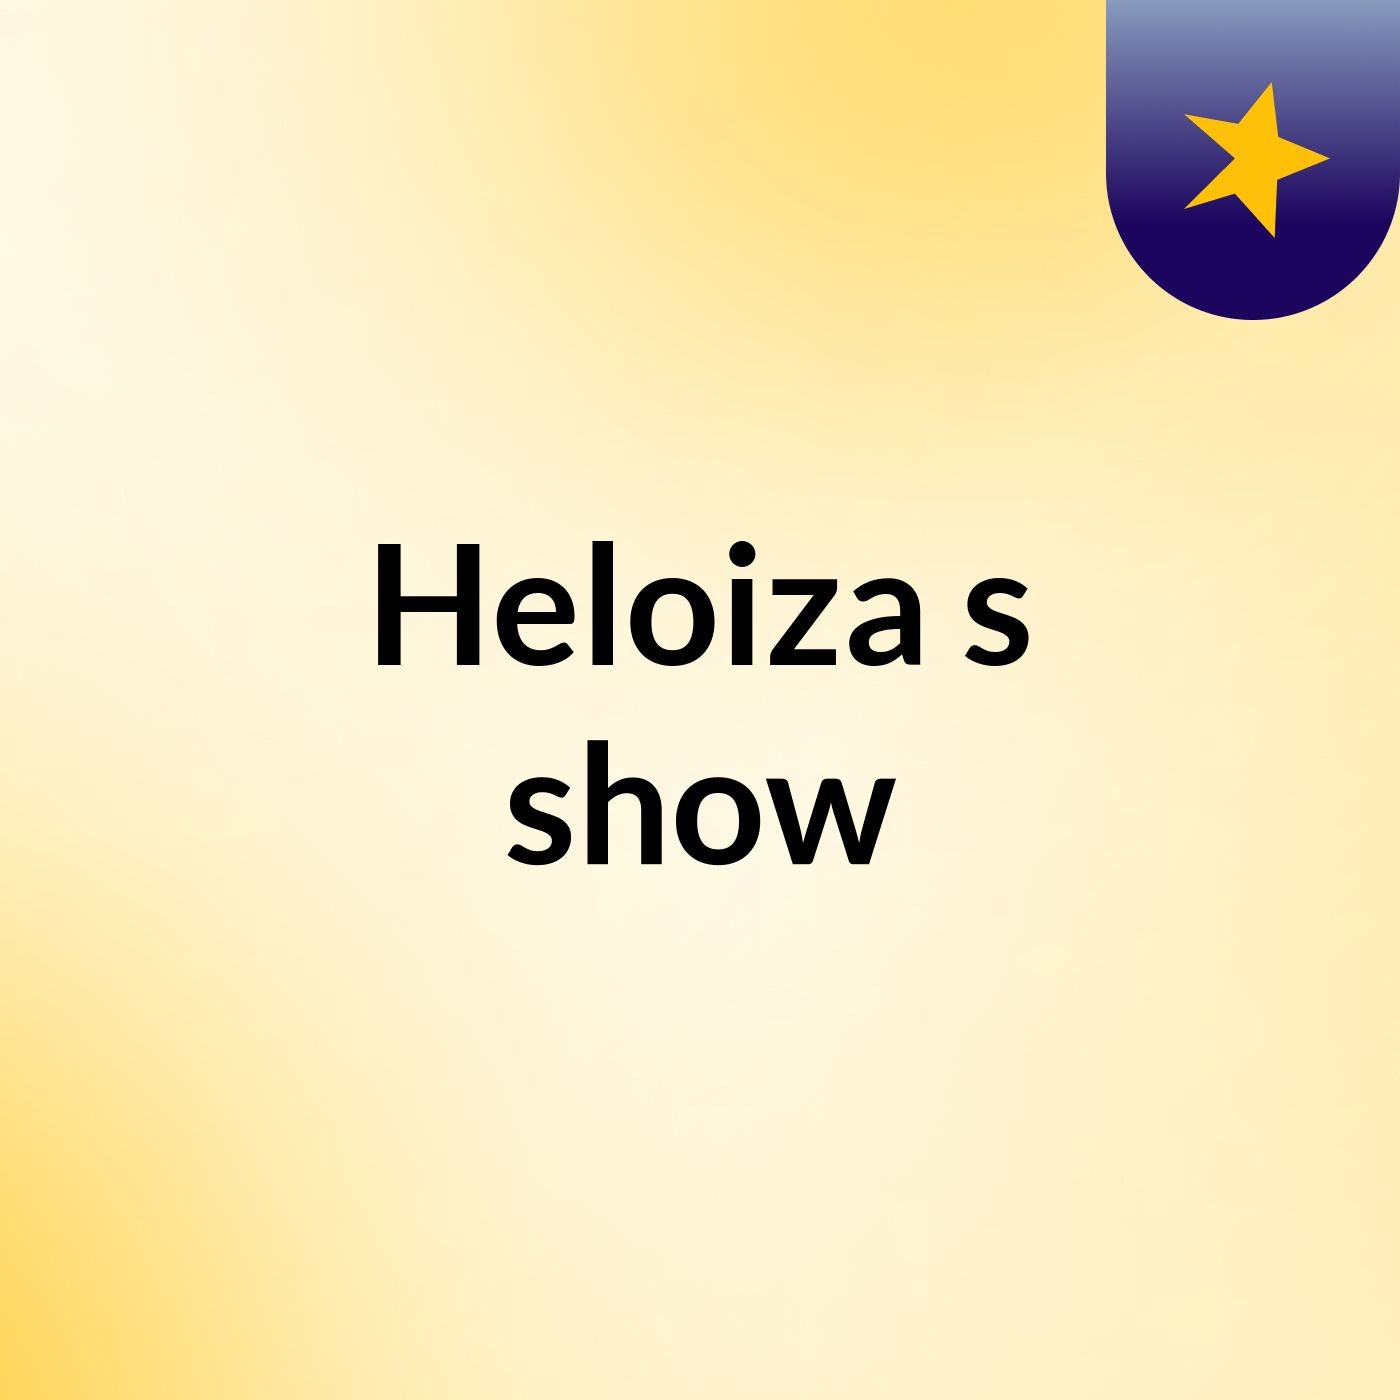 Heloiza's show